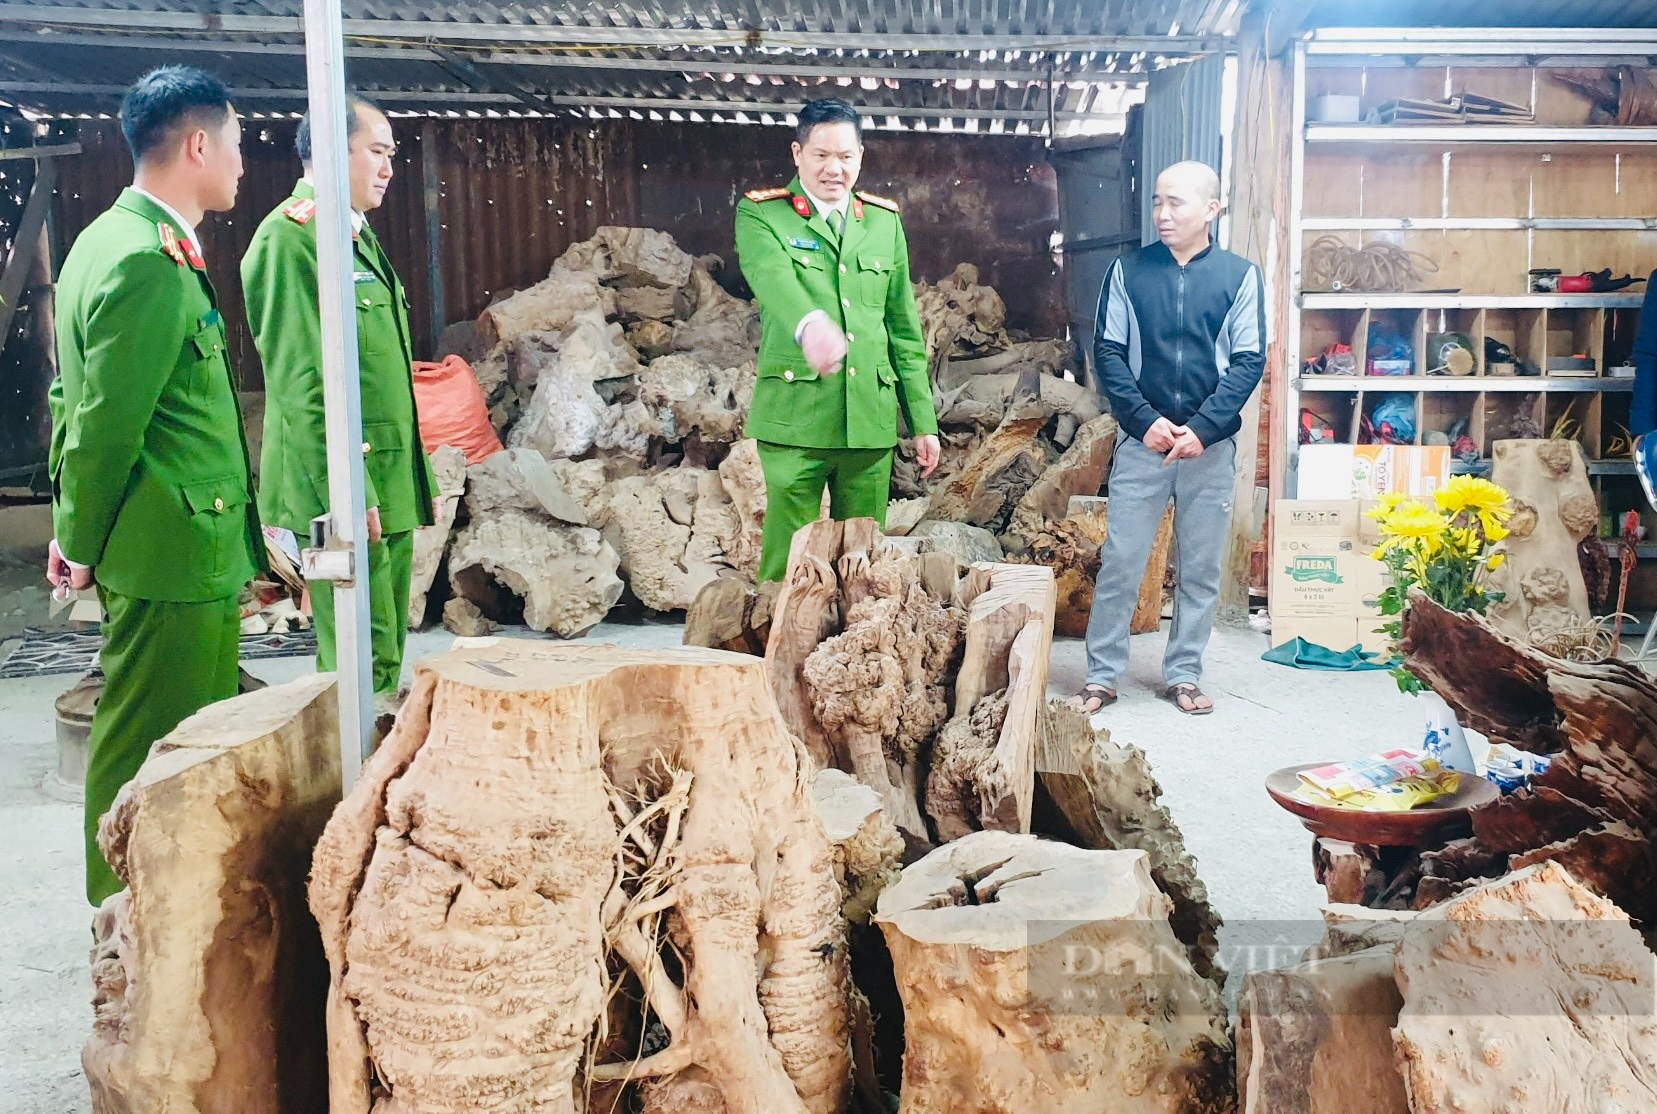 Thu giữ hàng trăm khúc gỗ quý tàng trữ trái phép ở Sìn Hồ (Lai Châu) - Ảnh 5.